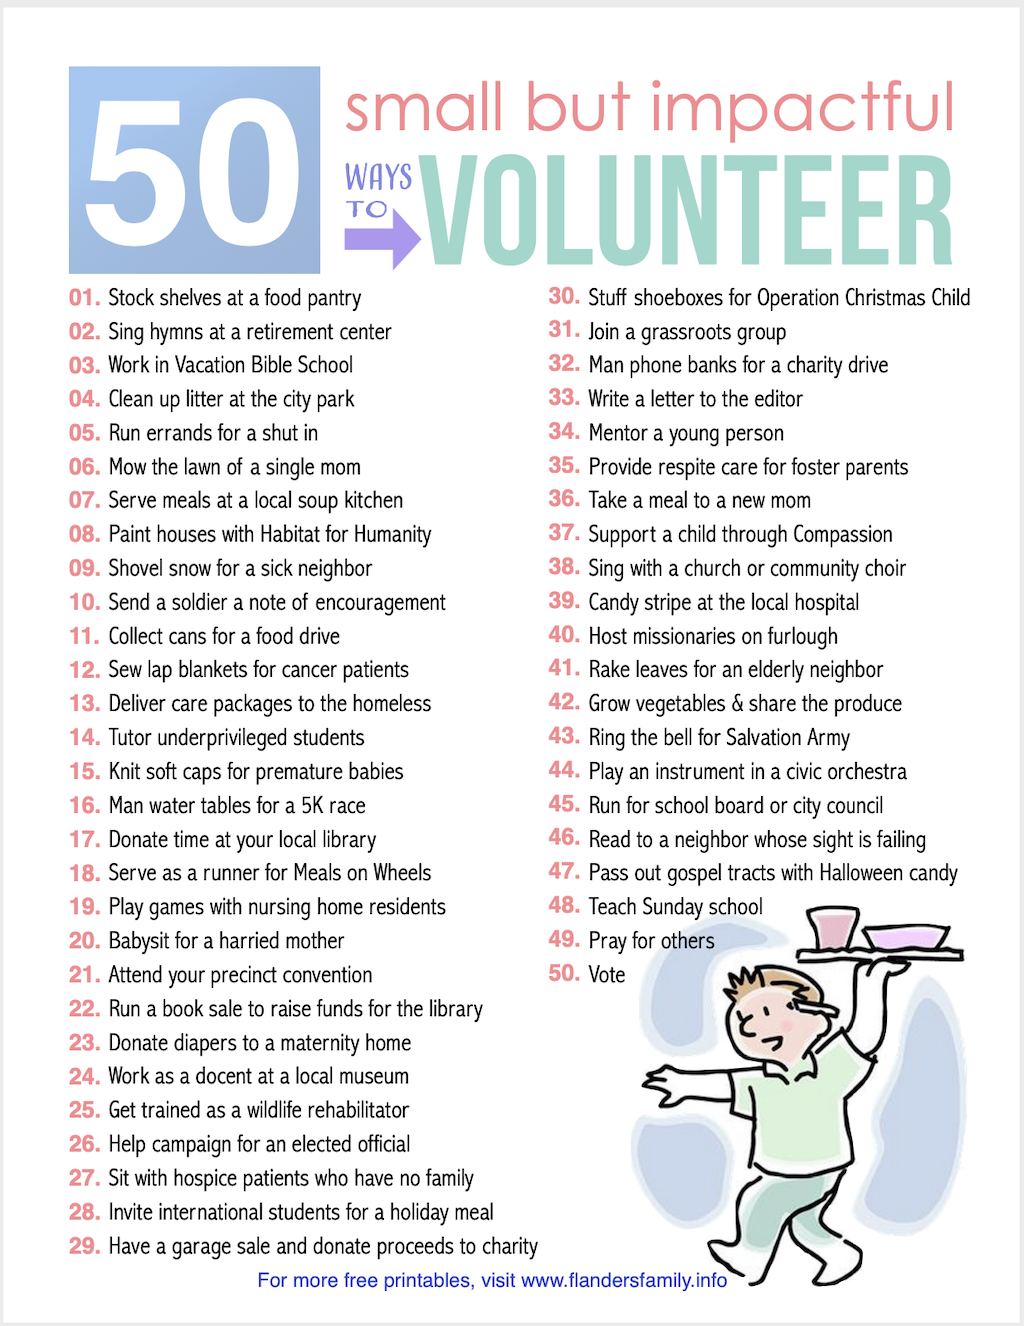 50 Ways to Volunteer